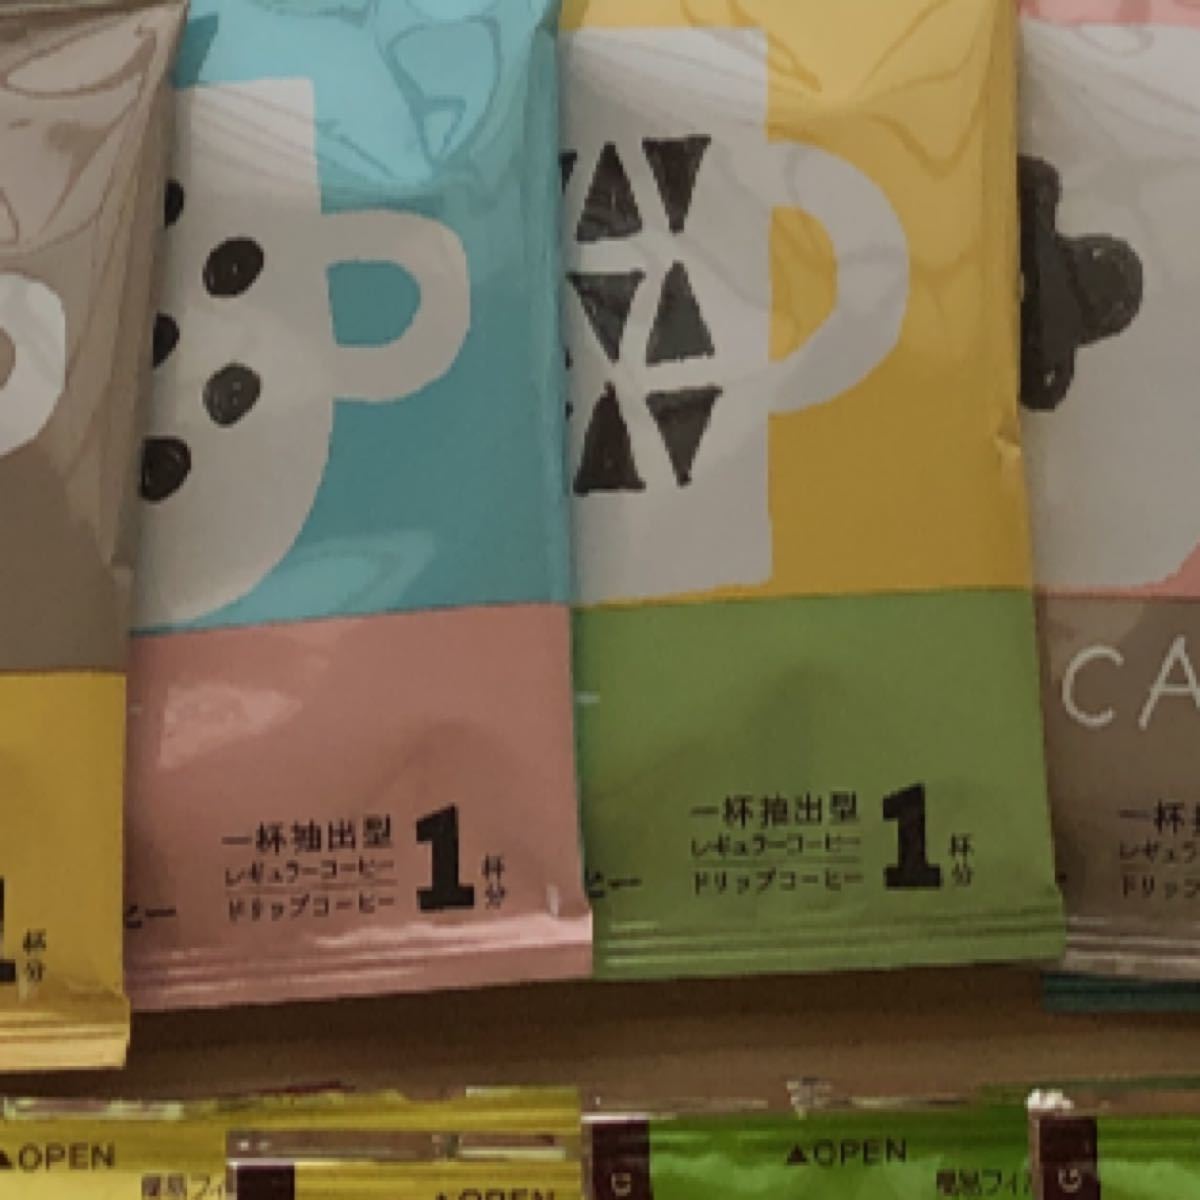 カフェインレスコーヒー　澤井珈琲8袋UCCCコーヒー8袋 合計16袋